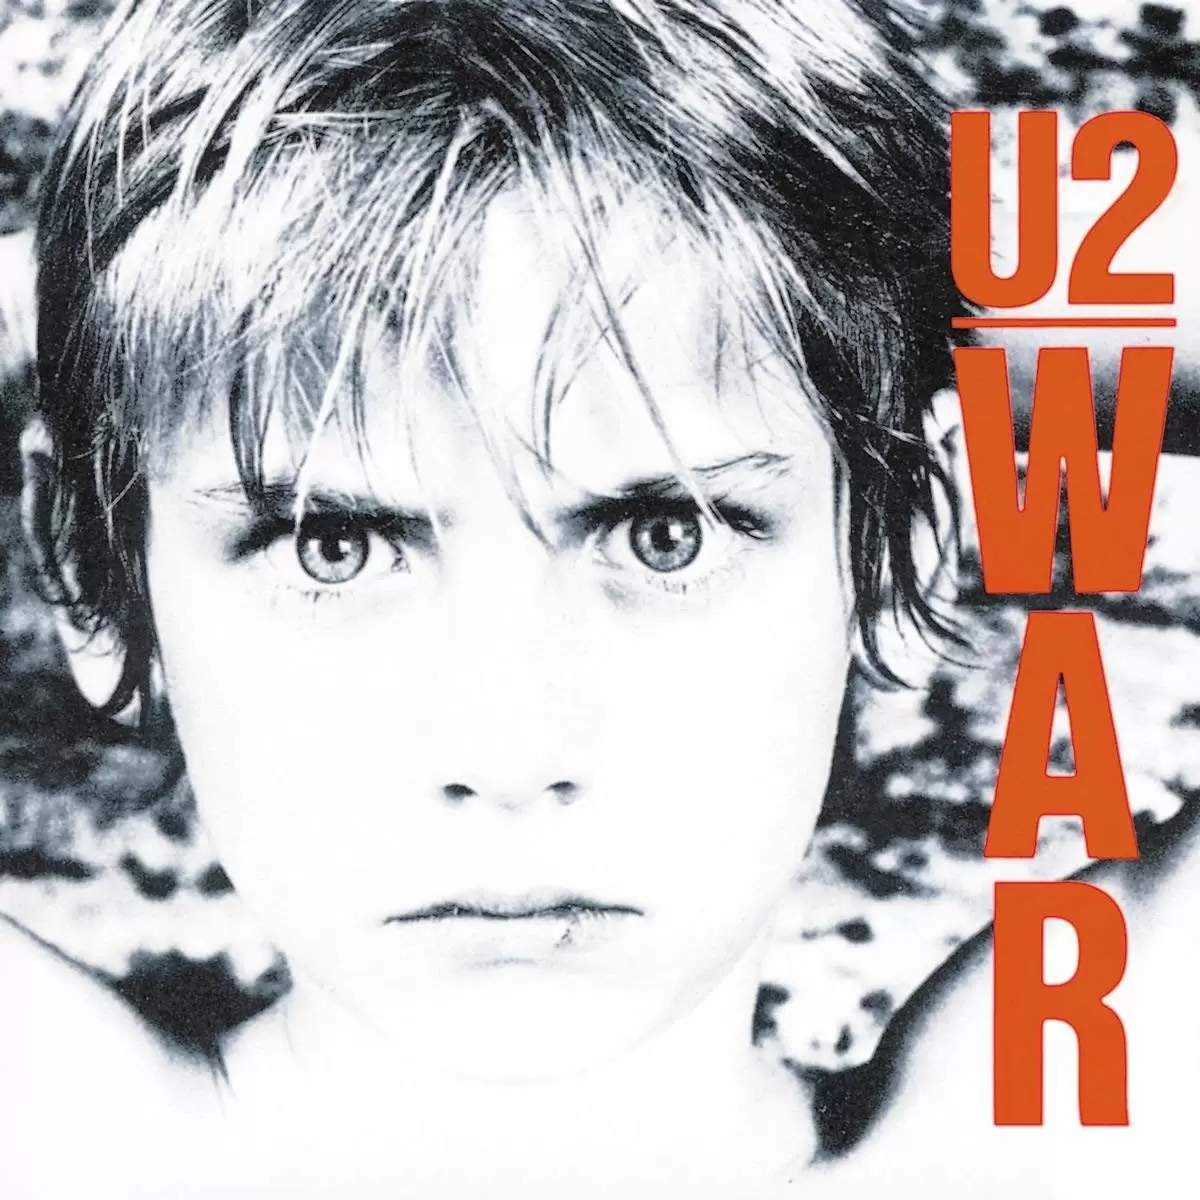 33 Tours (Albums) - U2 - War